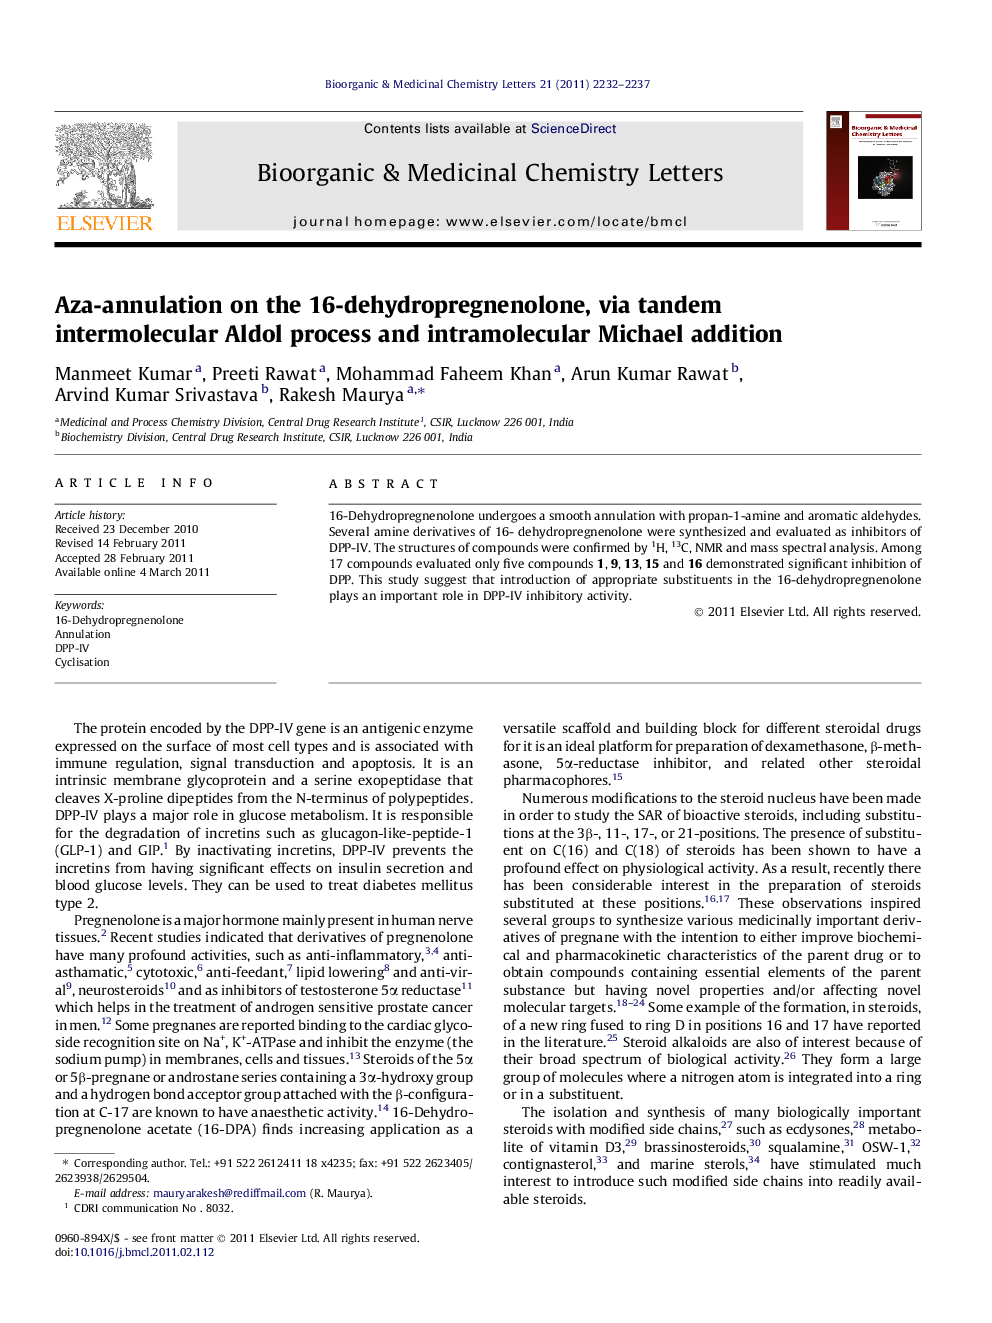 Aza-annulation on the 16-dehydropregnenolone, via tandem intermolecular Aldol process and intramolecular Michael addition